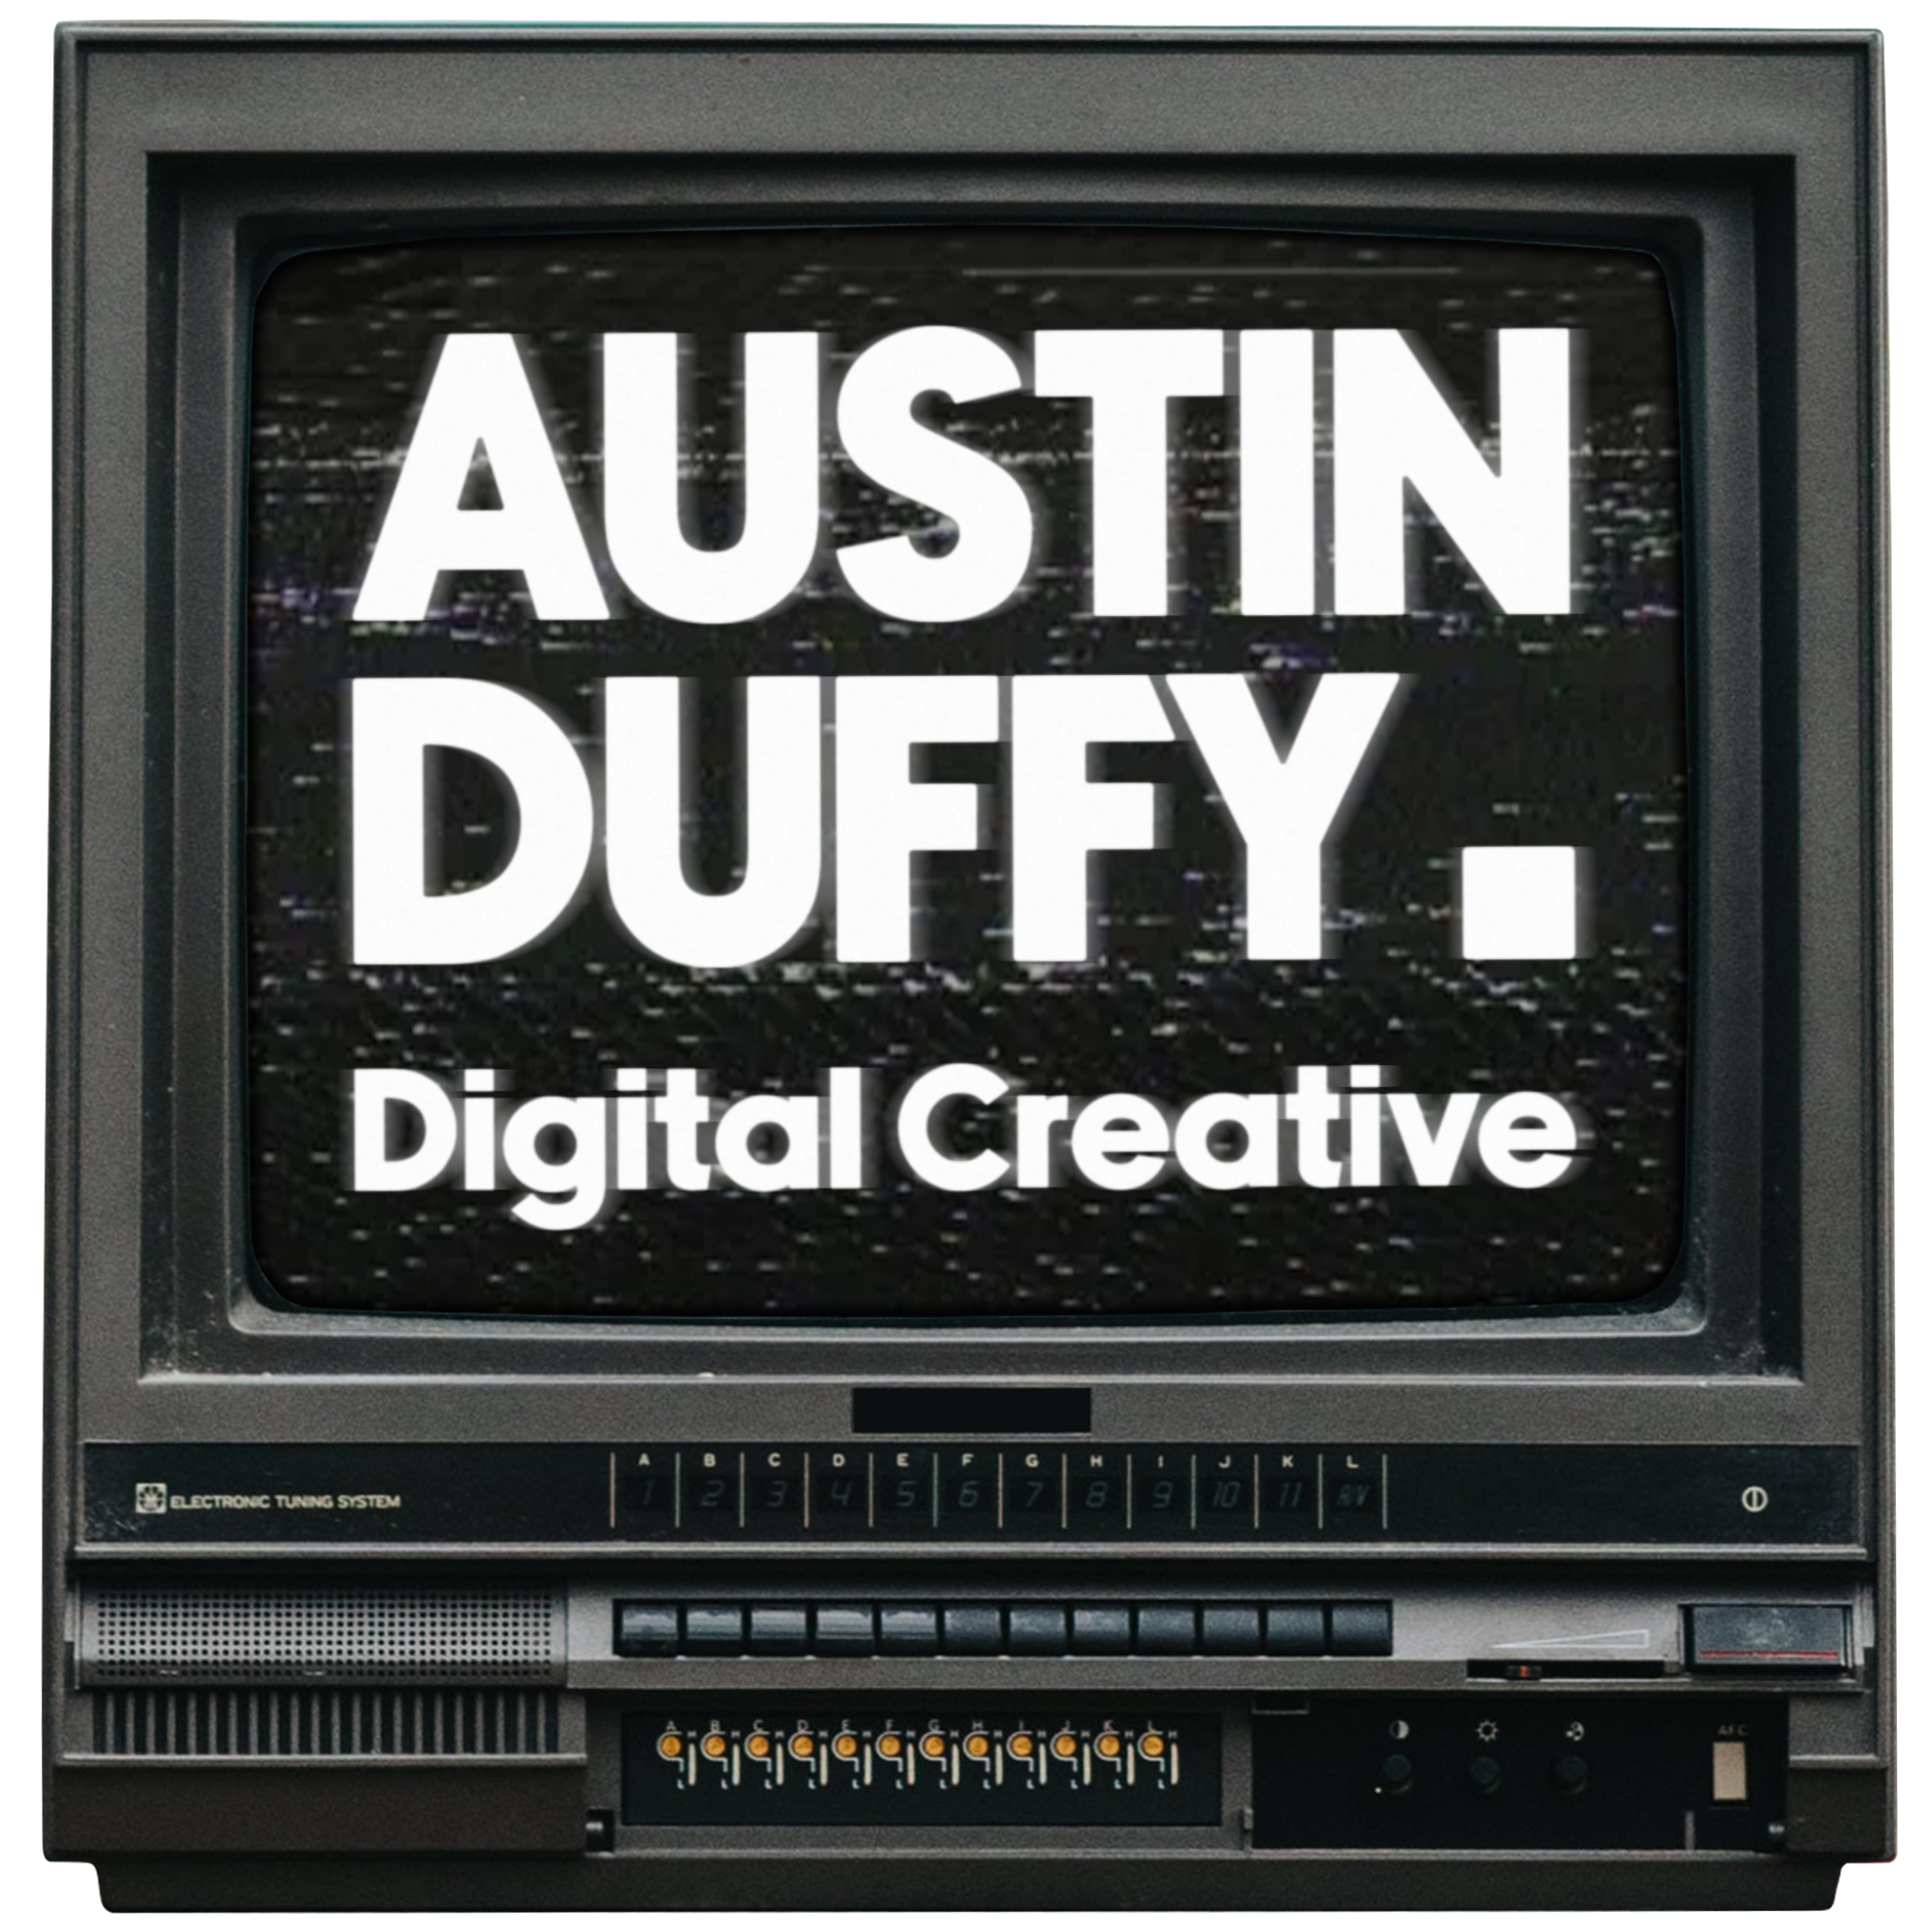 Austin Duffy